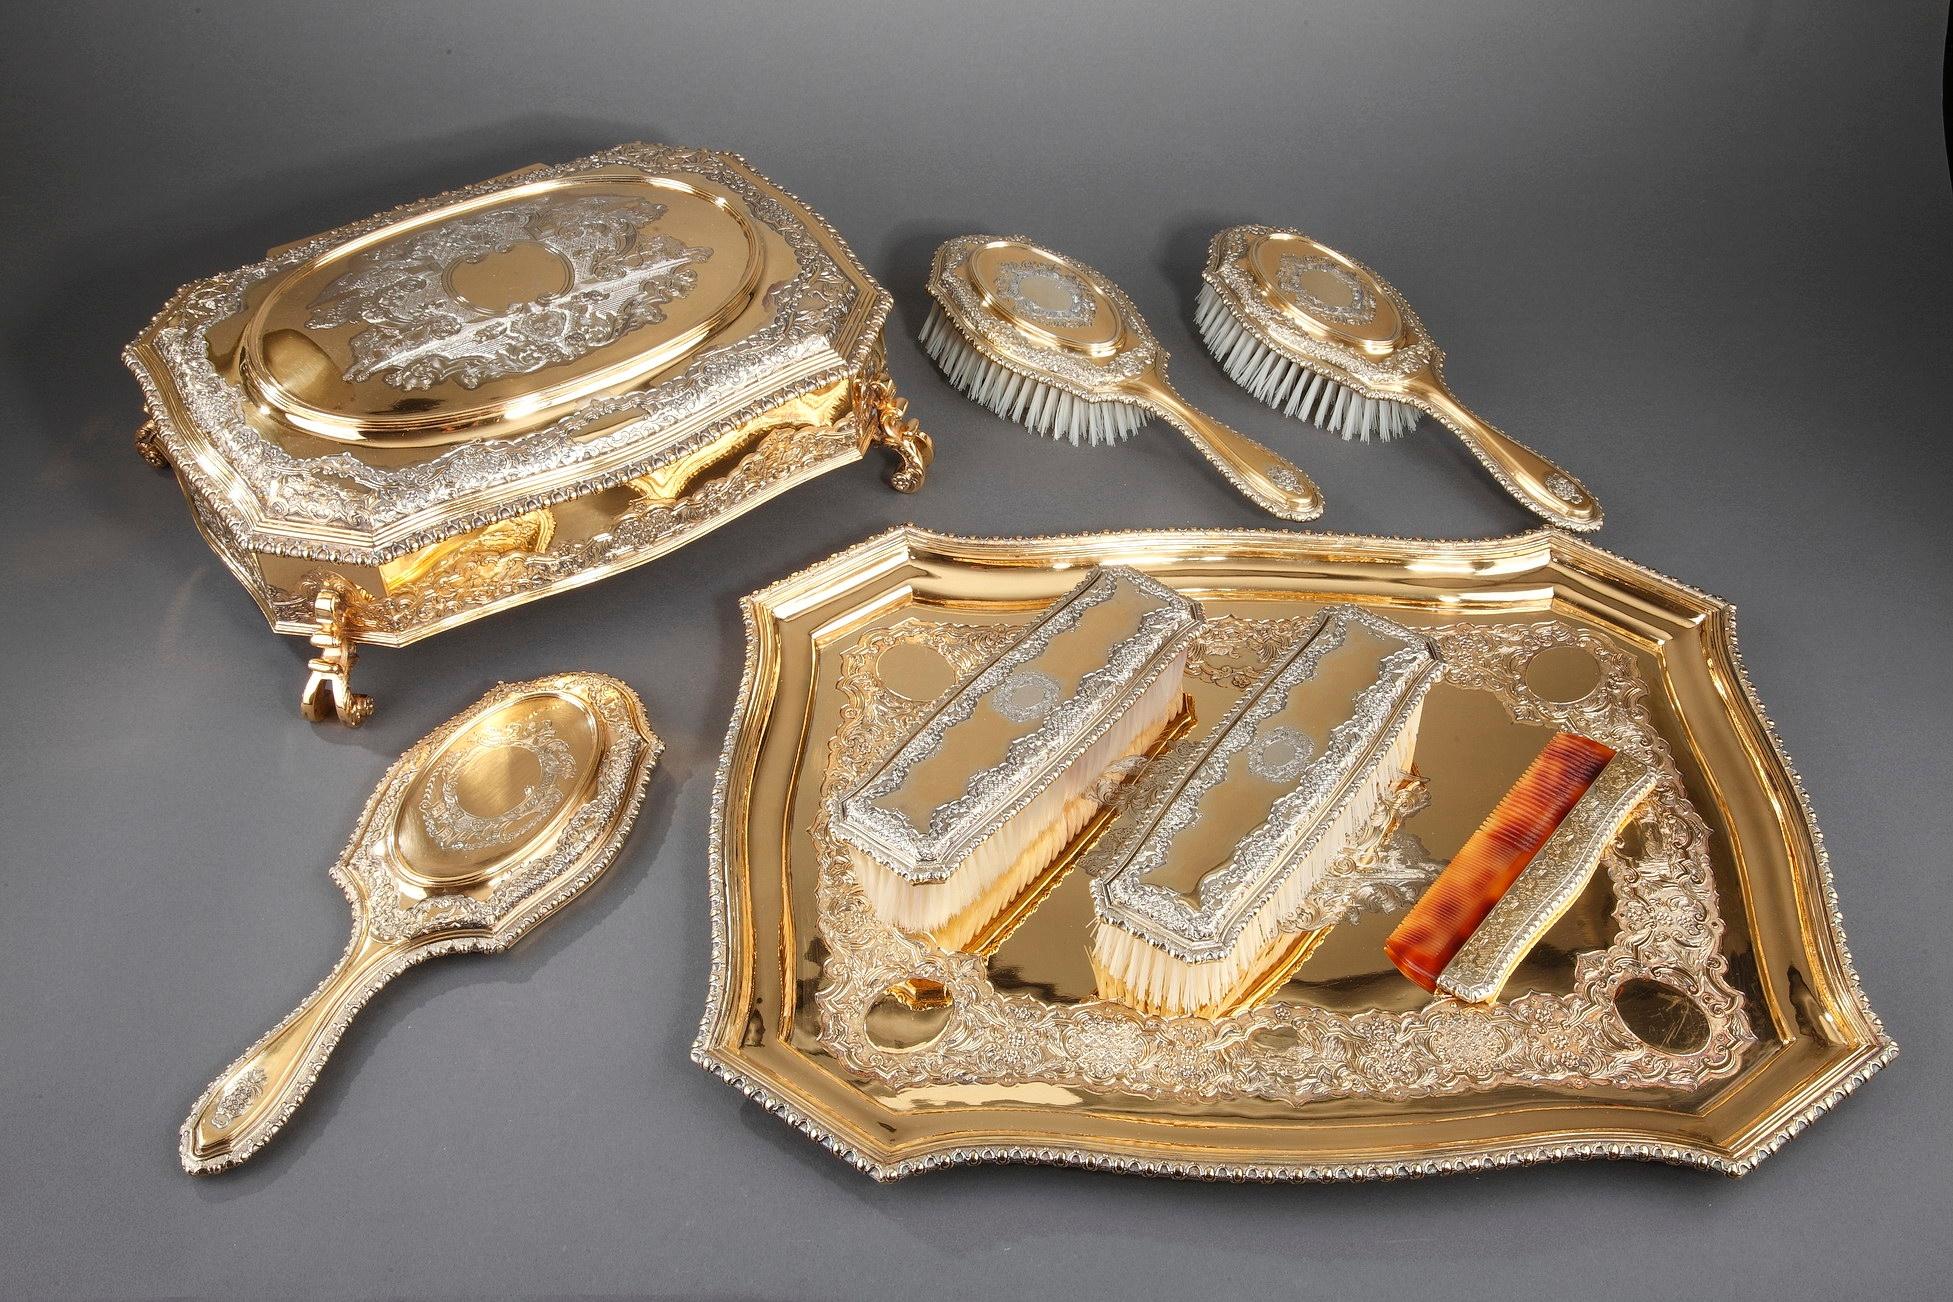 Silbervergoldetes Garderobenservice von George V., bestehend aus einem länglichen Tablett, einer großen Schmuckschatulle mit abnehmbarem Samtfutter, zwei Haarbürsten, zwei Kleiderbürsten, einem Kamm und einem Handspiegel, alles in einem mit rotem